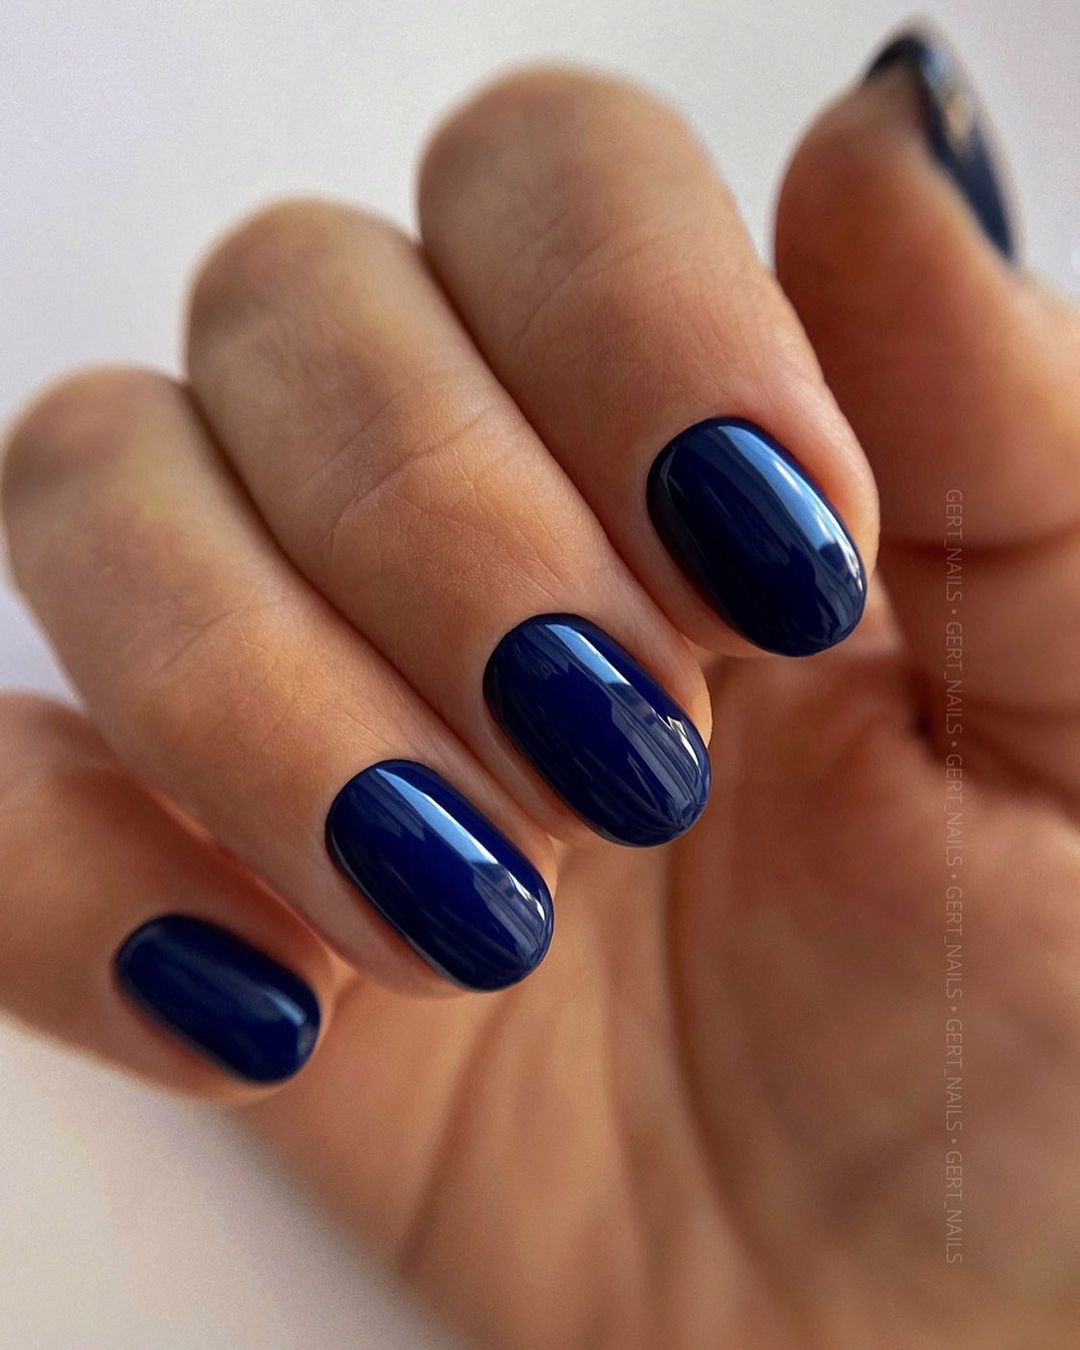 Bridesmaid nails navy blue